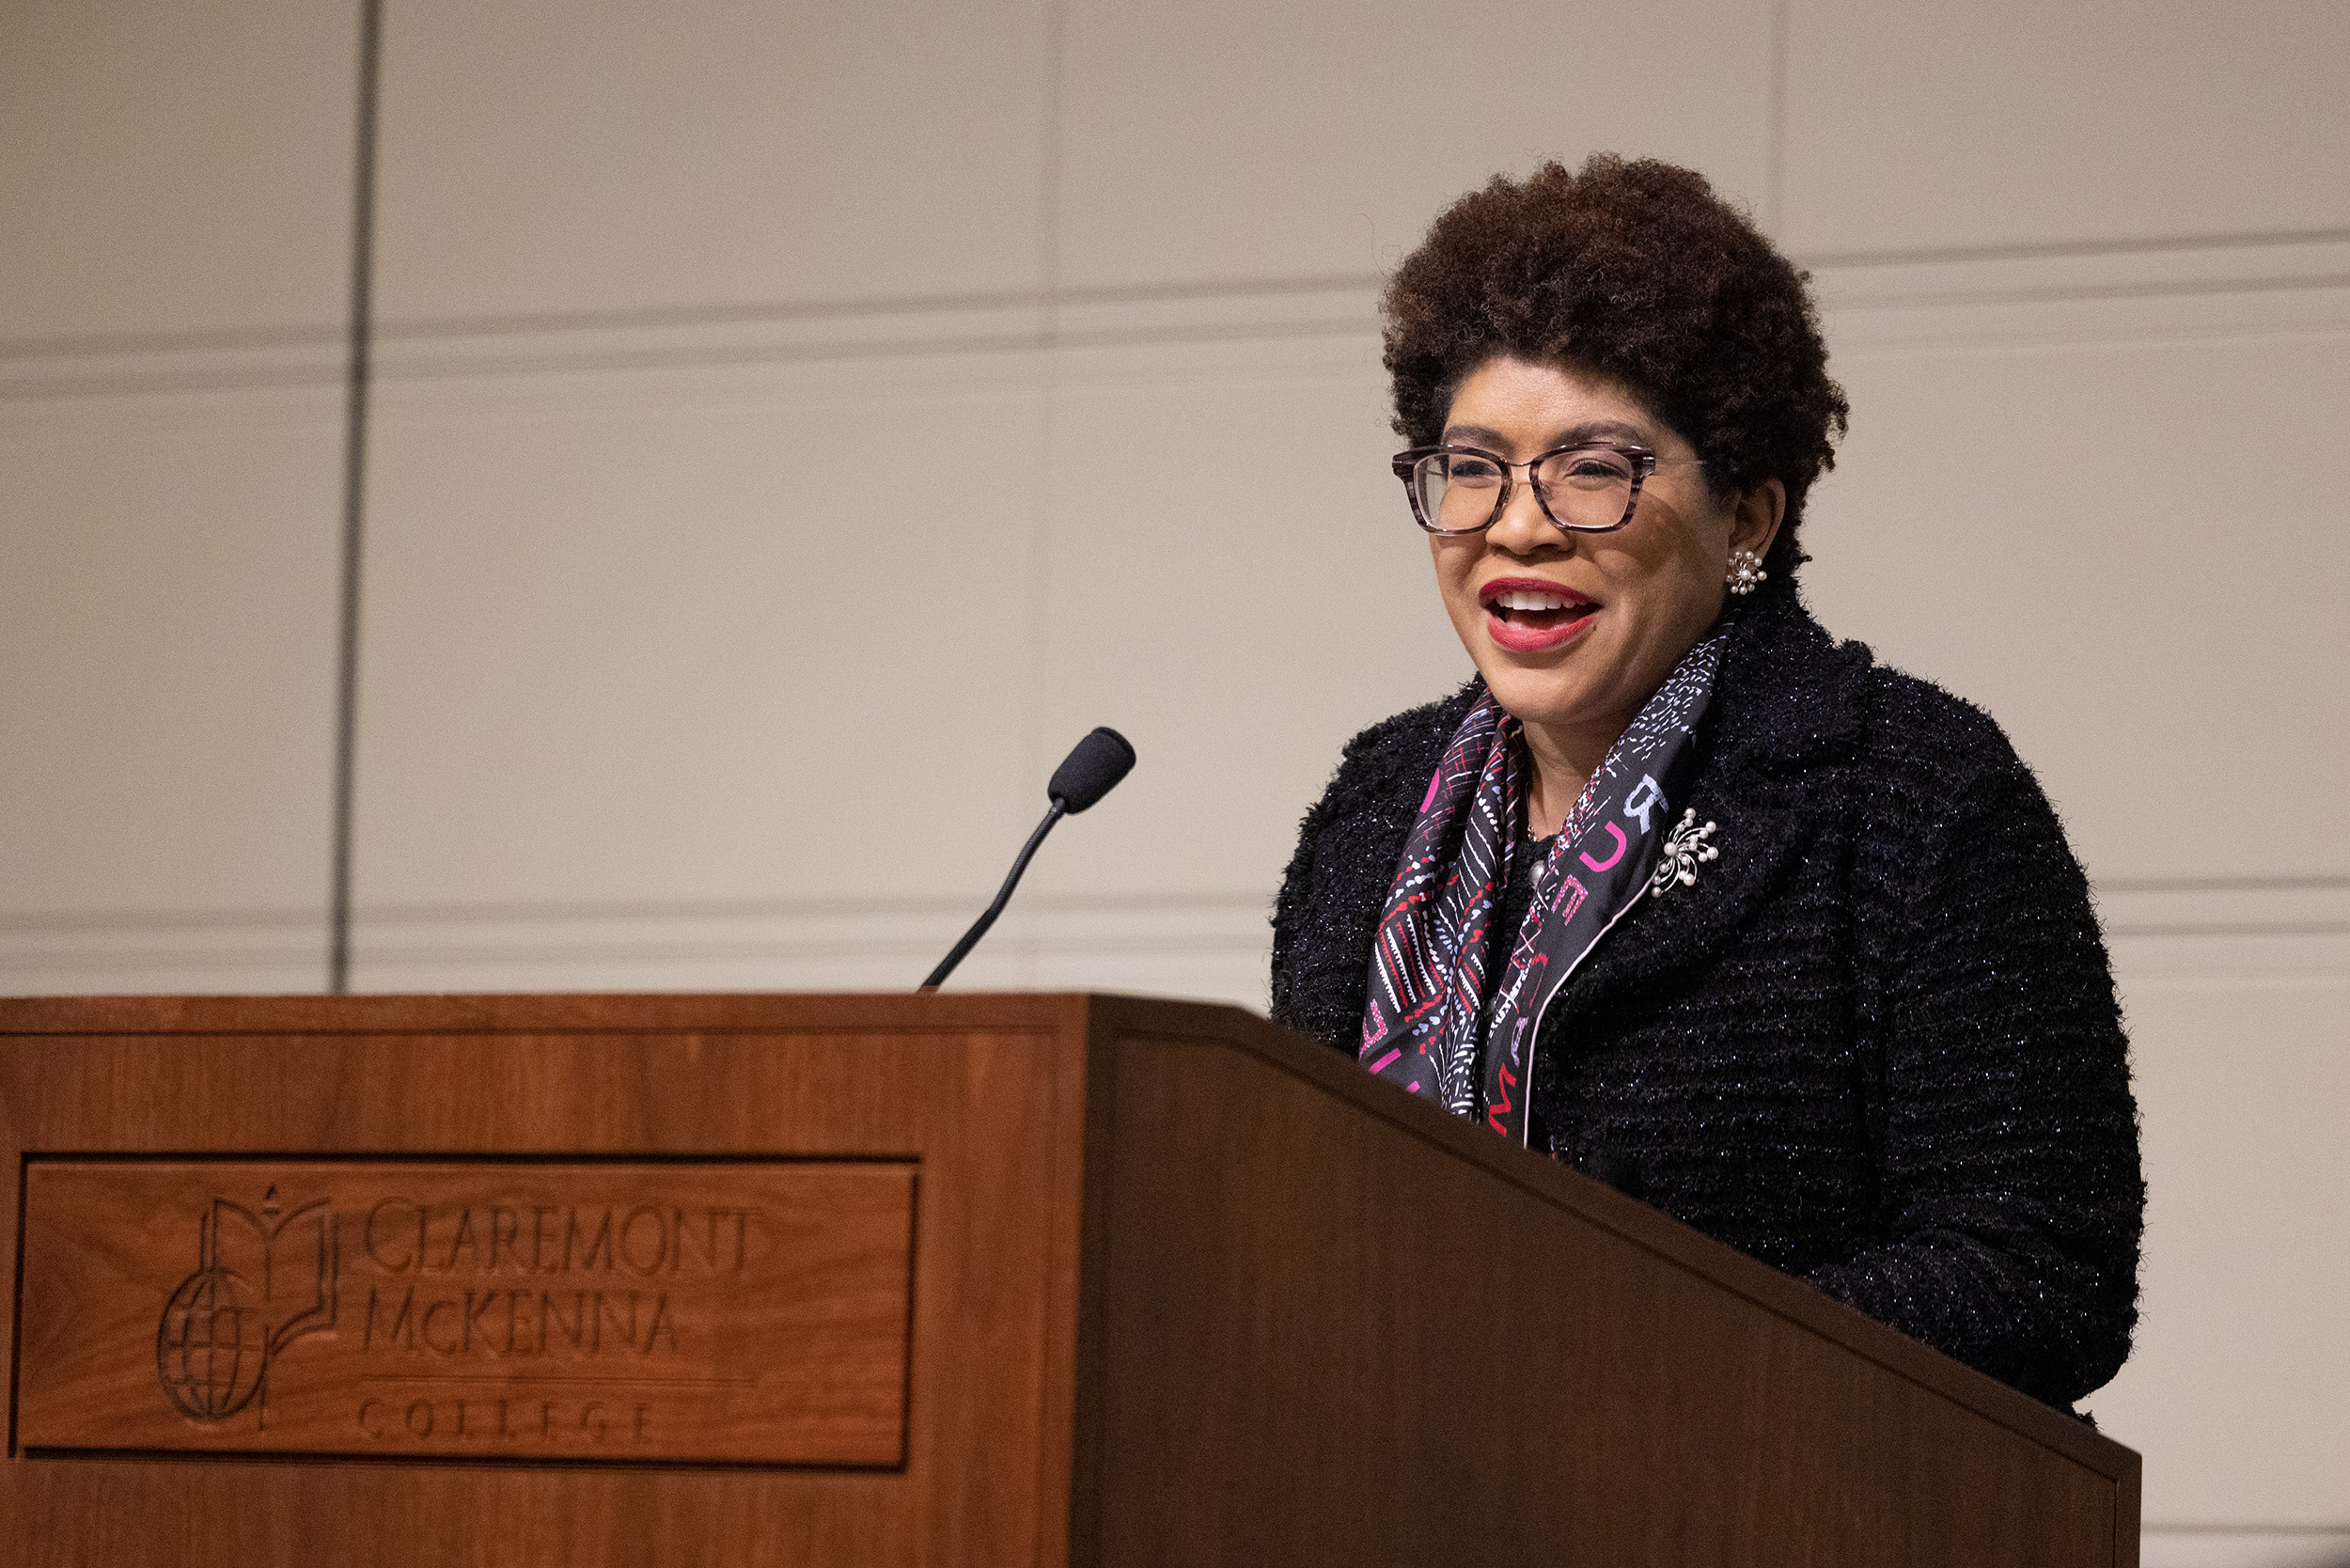 Tamara Lawson ’92 delivering Commemorative Lecture at the Ath.